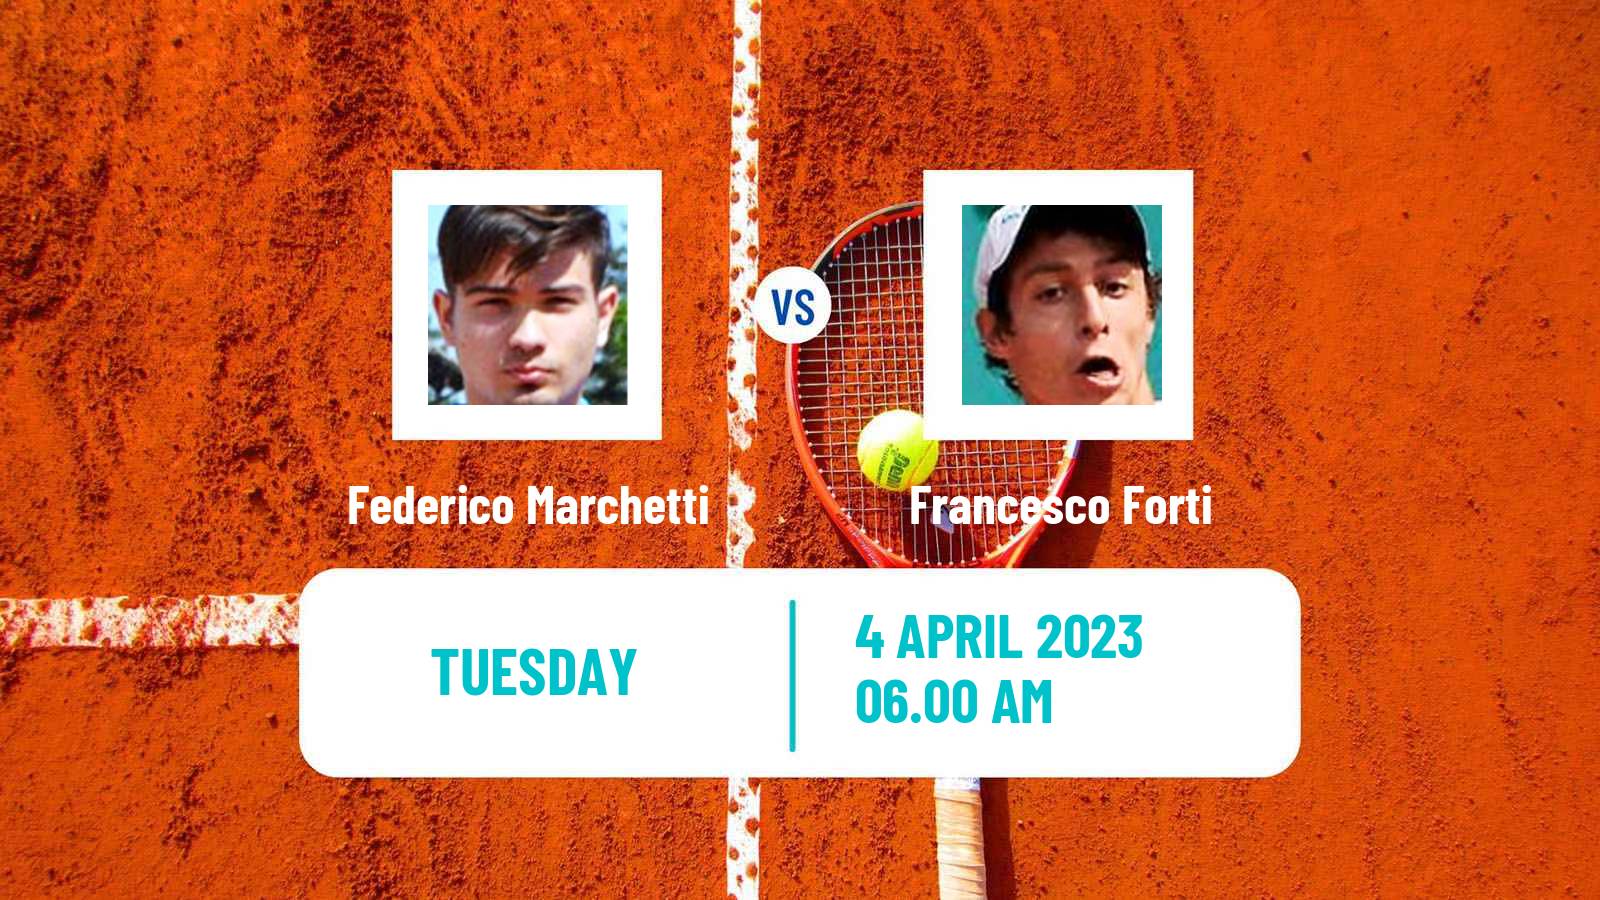 Tennis ITF Tournaments Federico Marchetti - Francesco Forti